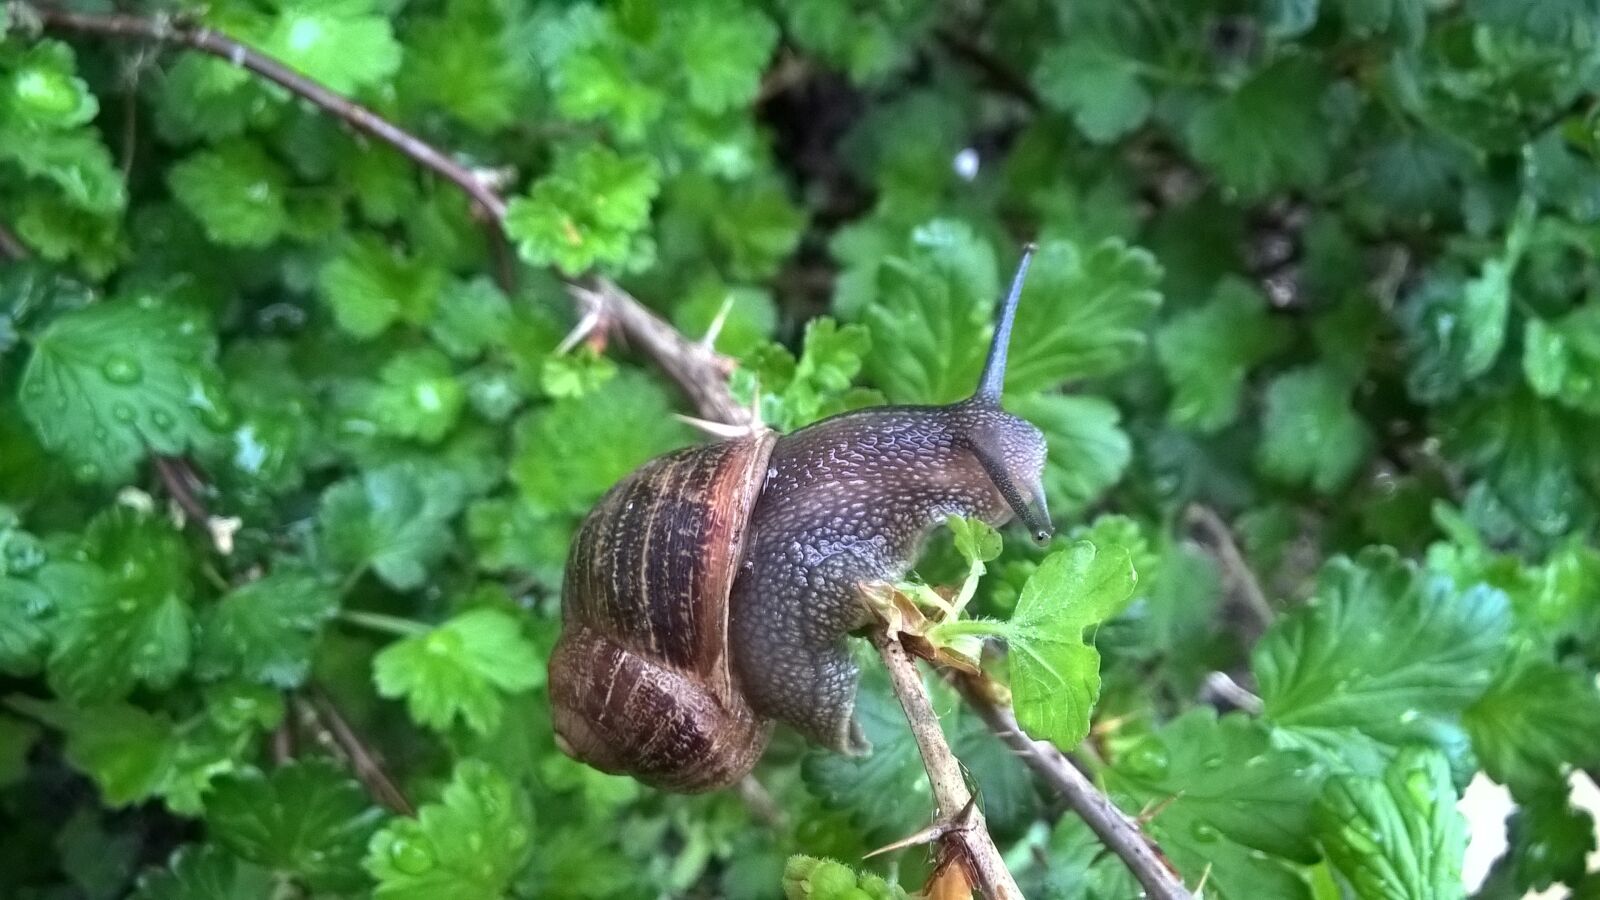 Nokia Lumia 830 sample photo. Snail, garden, foliage photography